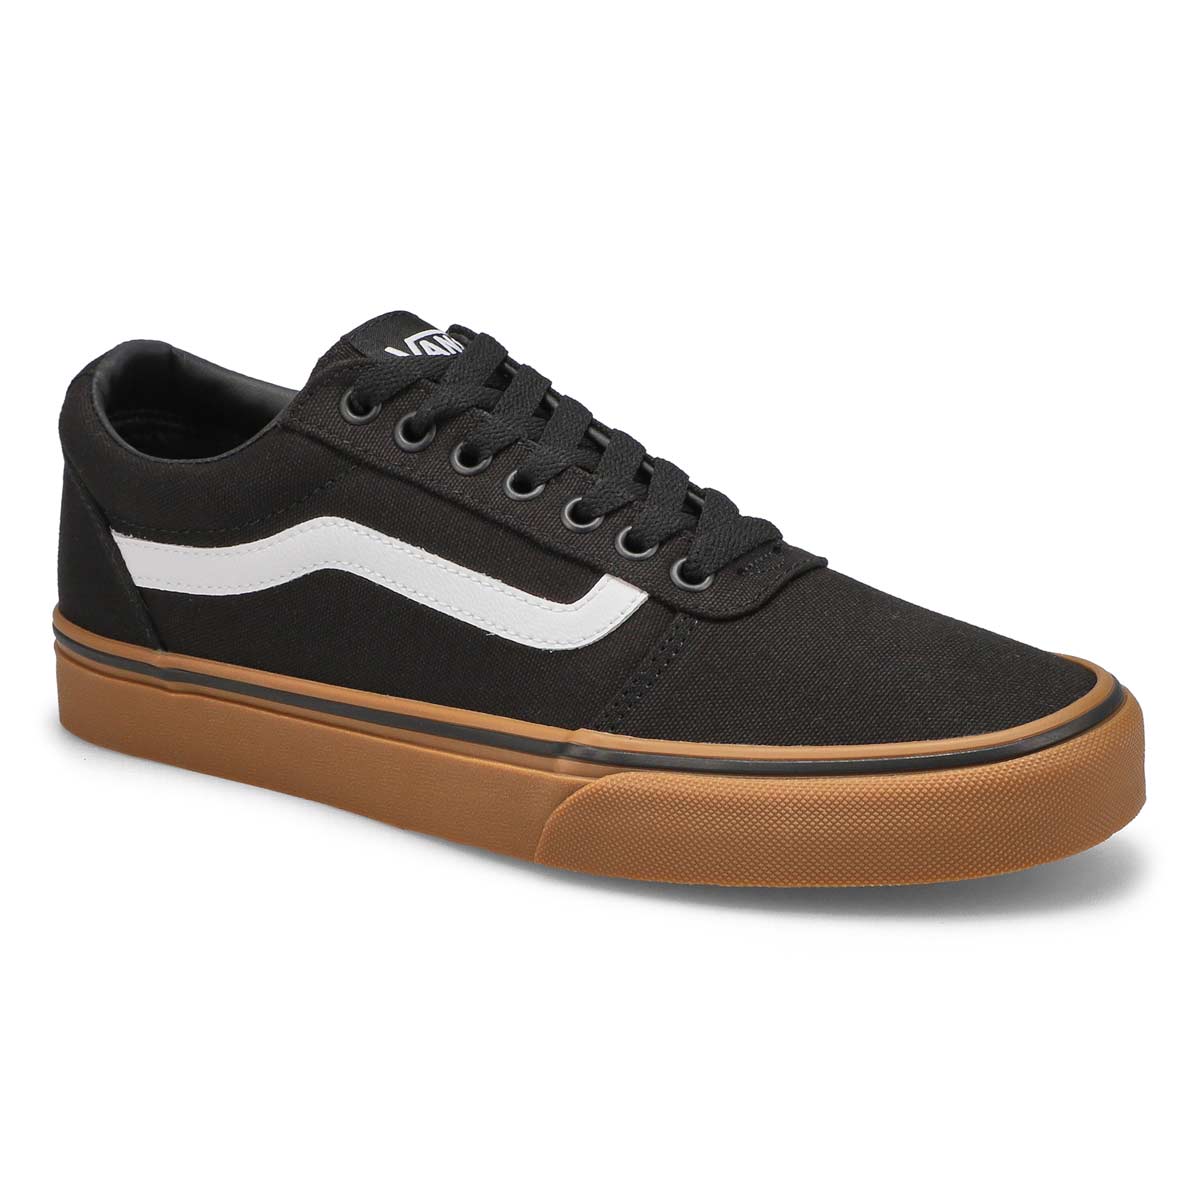 Vans Men's Ward Sneaker - Black/Gum 